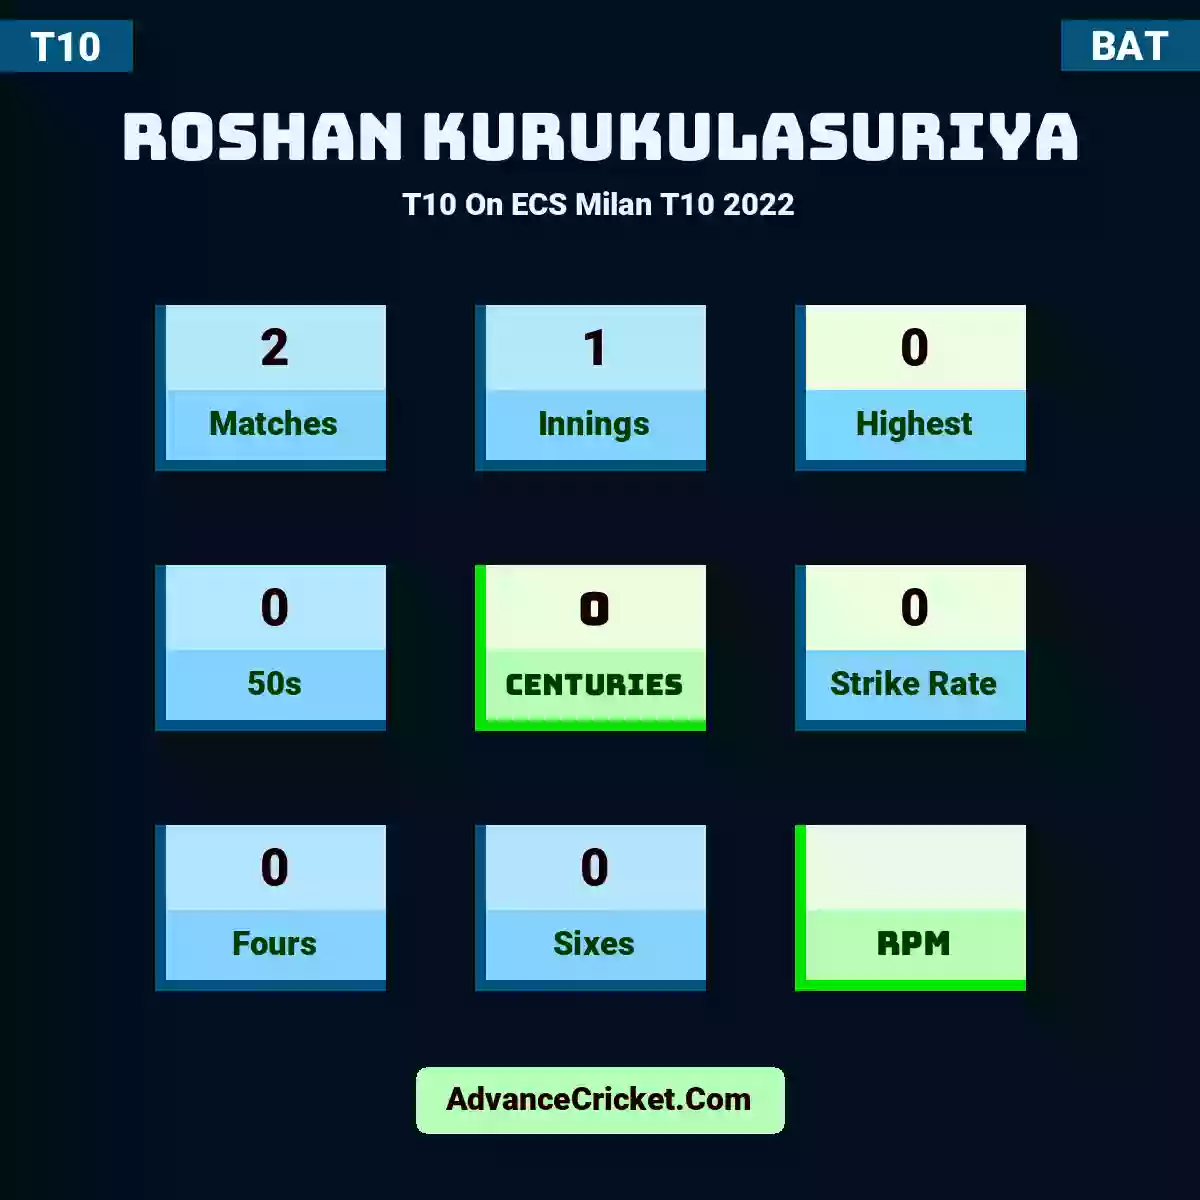 Roshan Kurukulasuriya T10  On ECS Milan T10 2022, Roshan Kurukulasuriya played 2 matches, scored 0 runs as highest, 0 half-centuries, and 0 centuries, with a strike rate of 0. R.Kurukulasuriya hit 0 fours and 0 sixes.